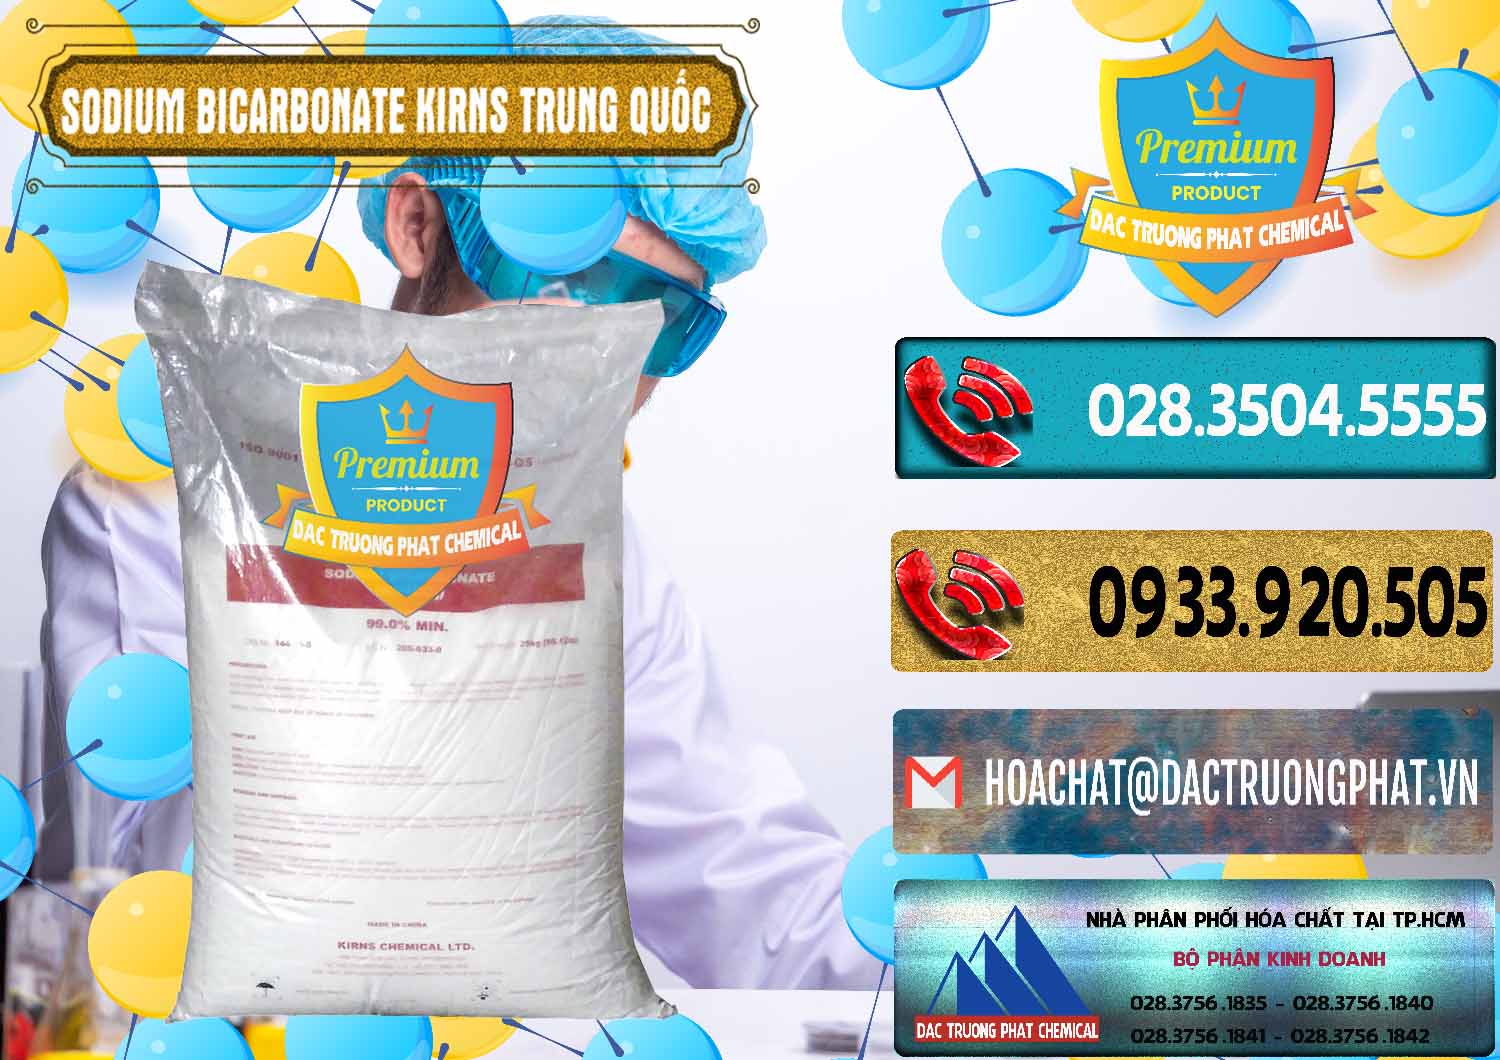 Chuyên bán - phân phối Sodium Bicarbonate – Bicar NaHCO3 Food Grade Kirns Trung Quốc - 0217 - Cty phân phối & kinh doanh hóa chất tại TP.HCM - hoachatdetnhuom.com